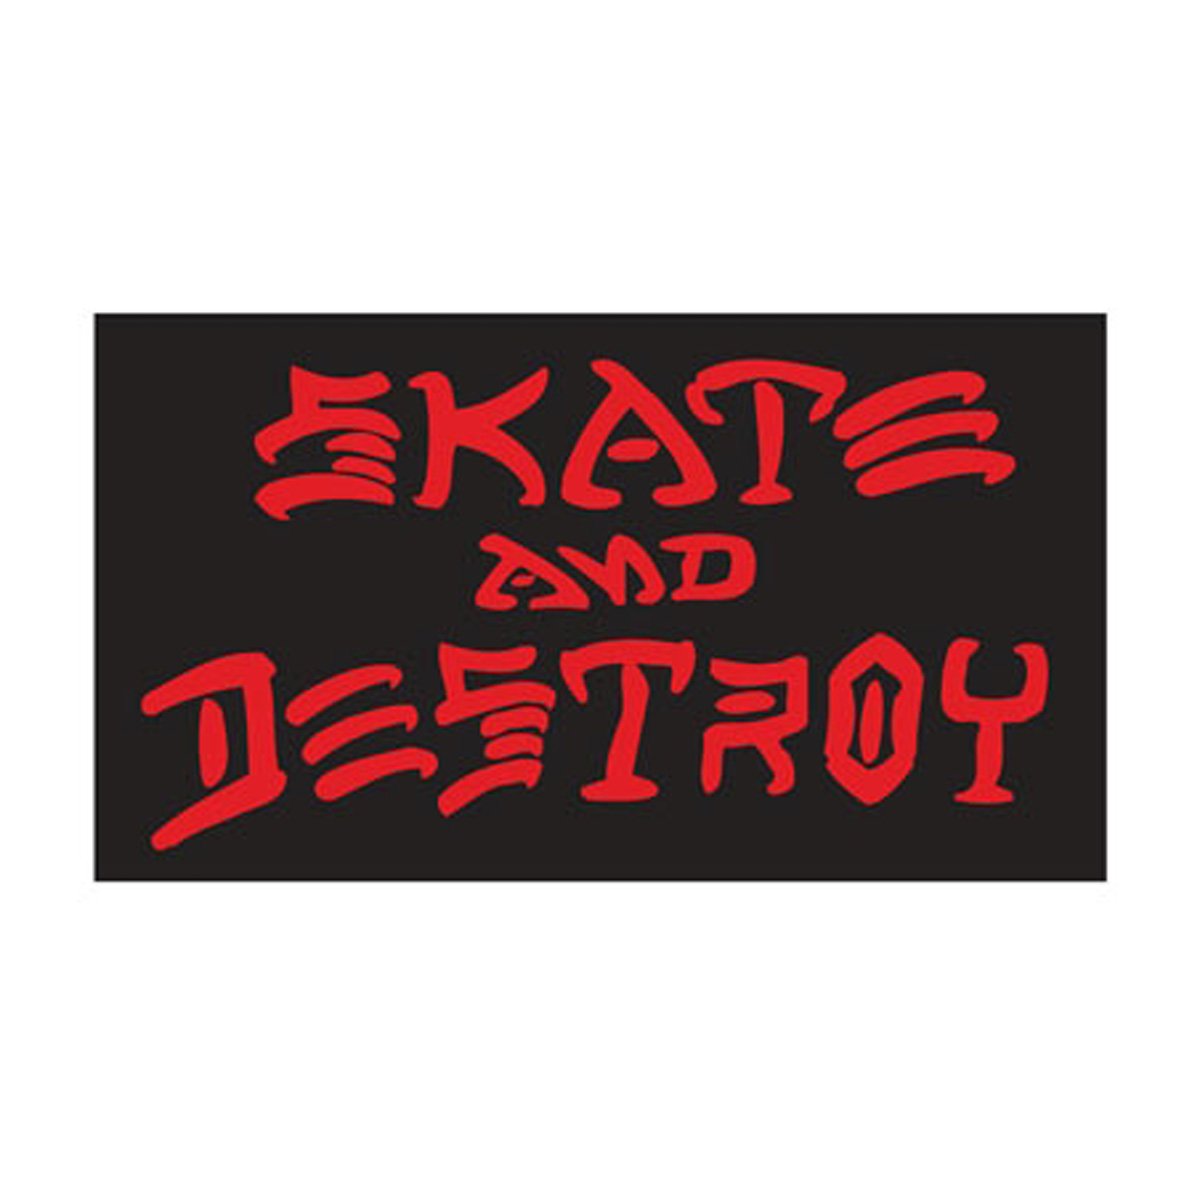 Thrasher Skate And Destroy Sticker - LG